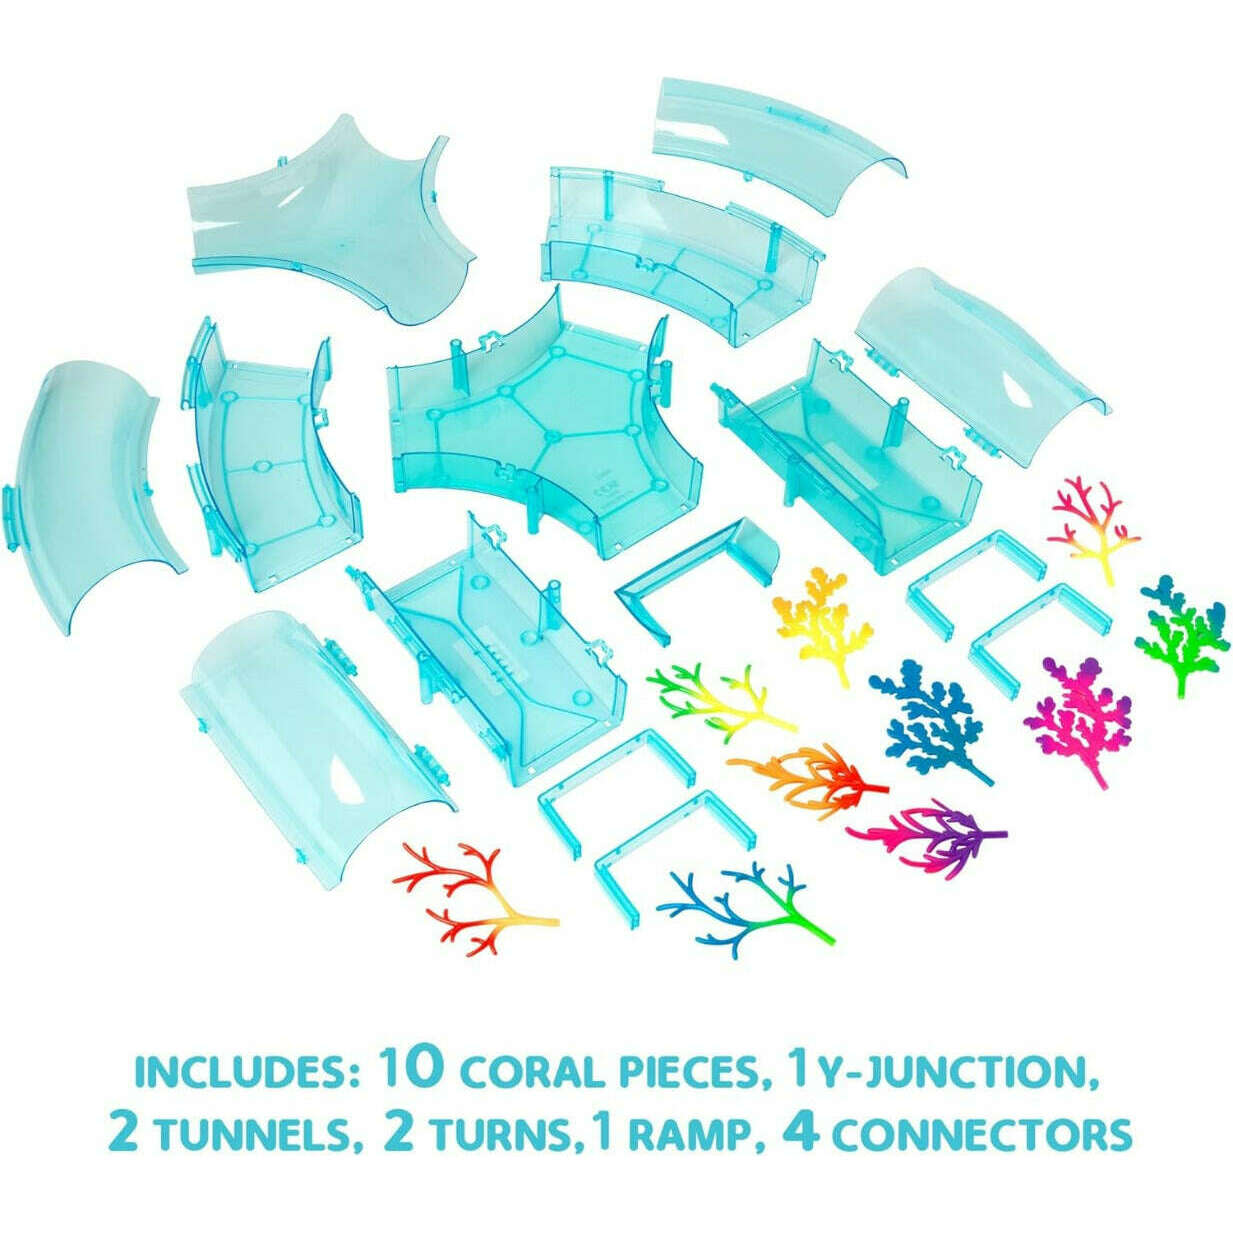 Toys N Tuck:Zhu Zhu Aquarium Coral Reef Tunnel Combo Set,Zhu Zhu Pets